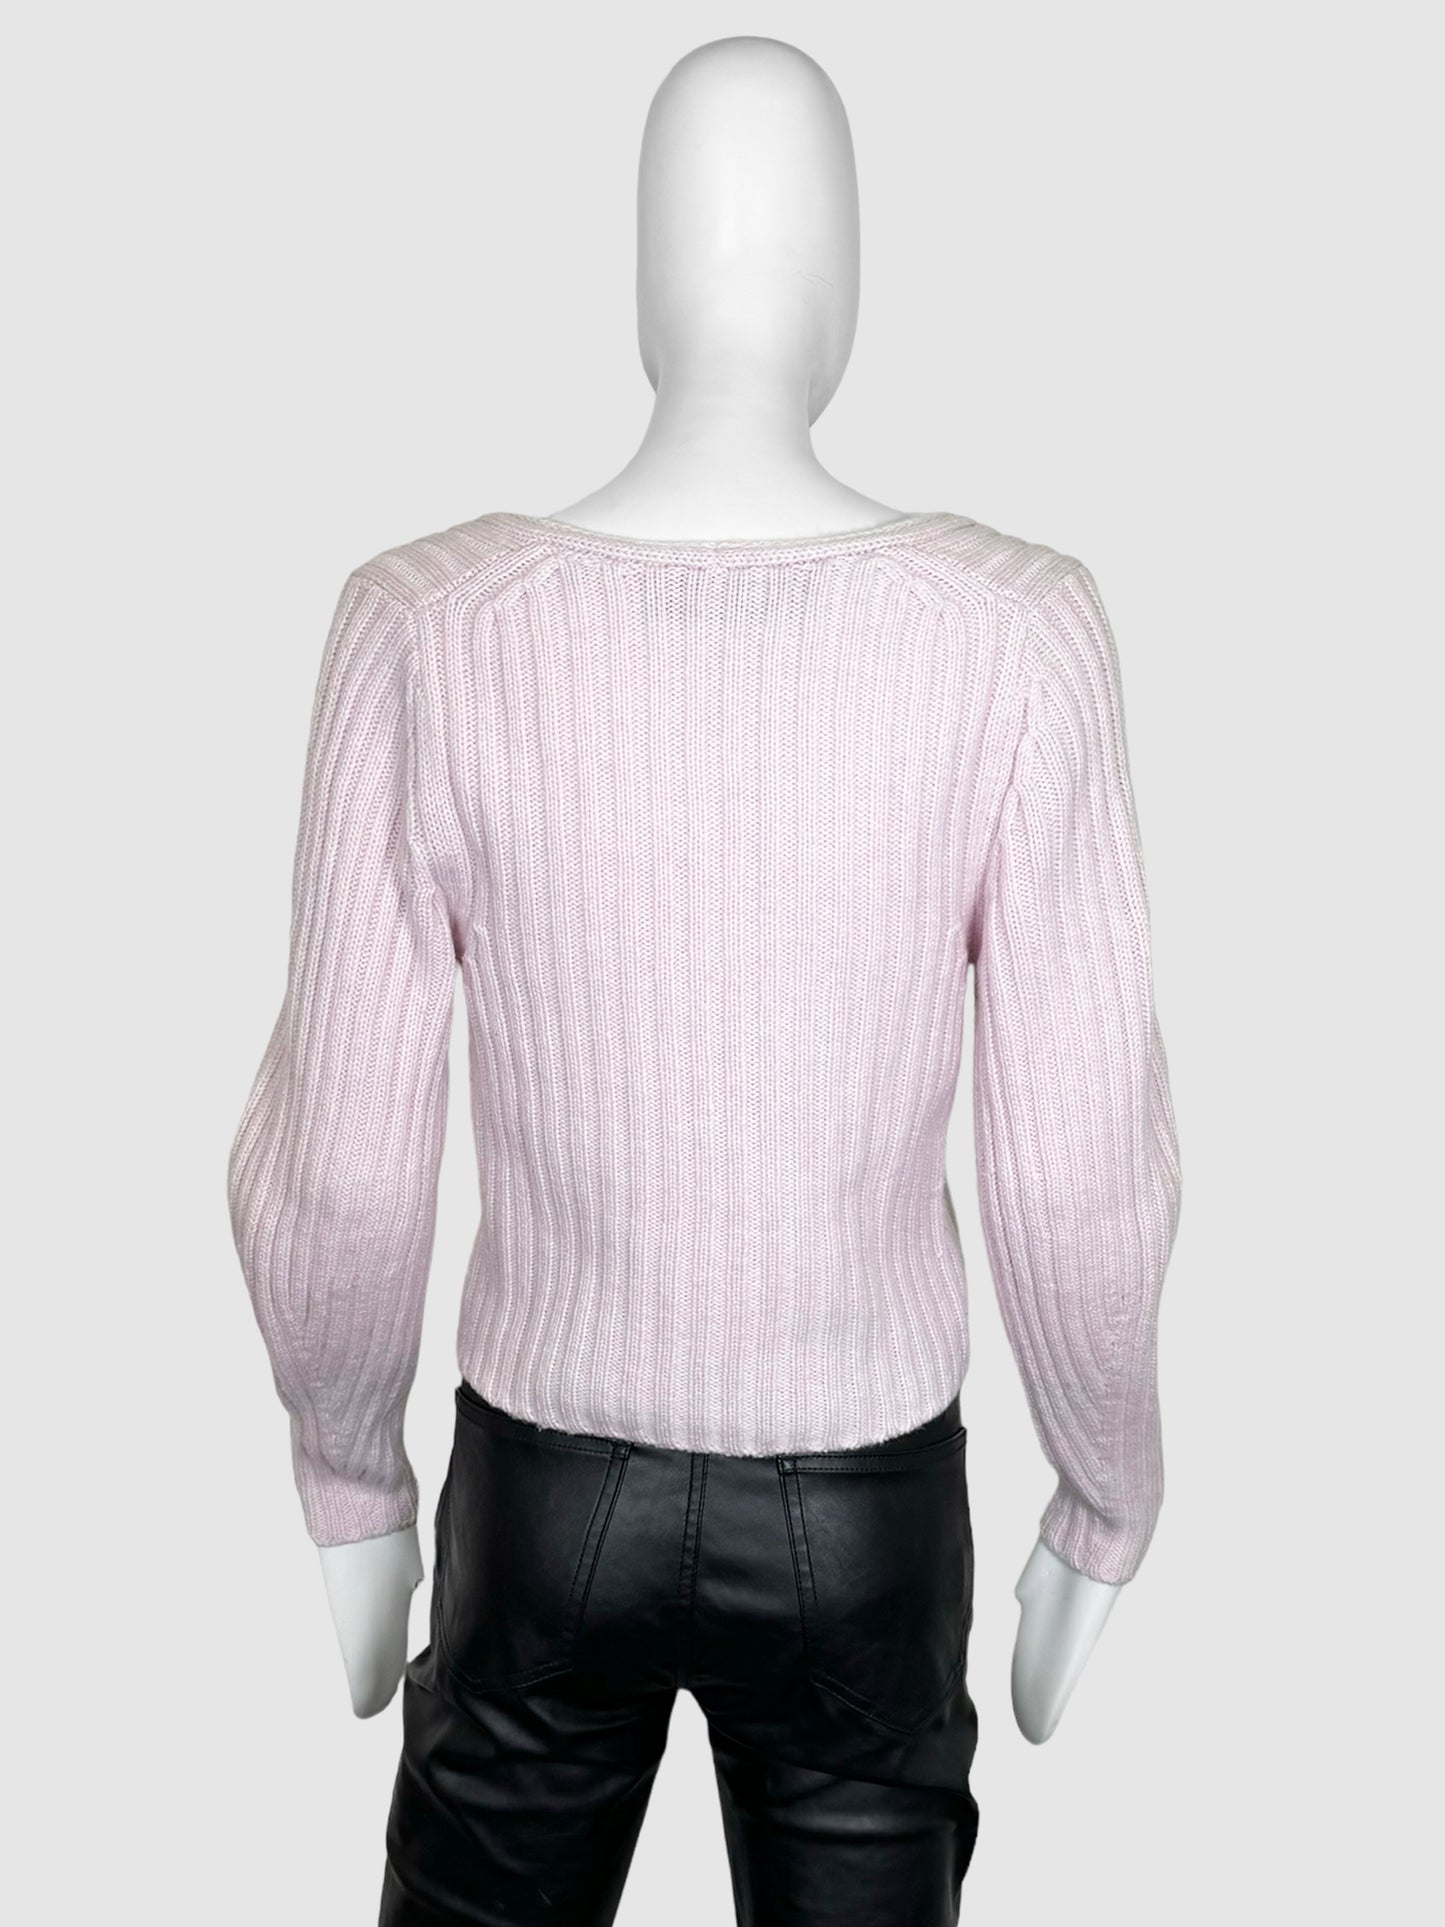 Vince V-Neck Sweater - Size XS